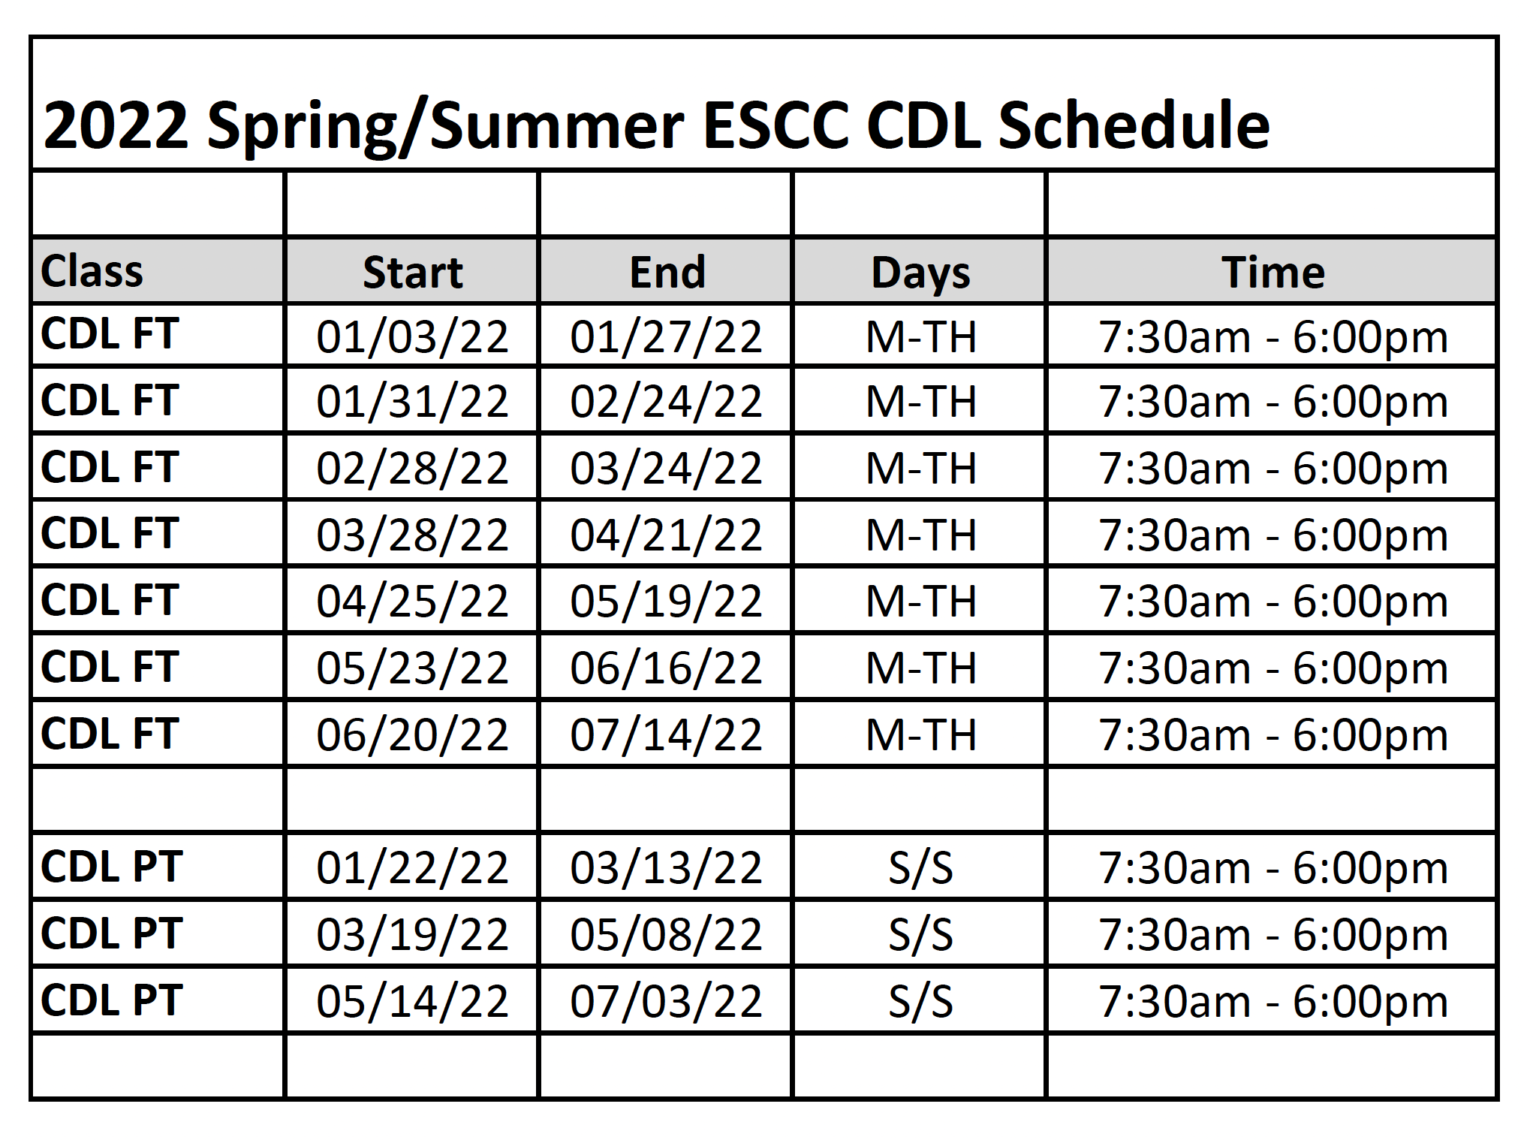 ESCC Announces 2022 CDL Schedule | Eastern Shore Community College